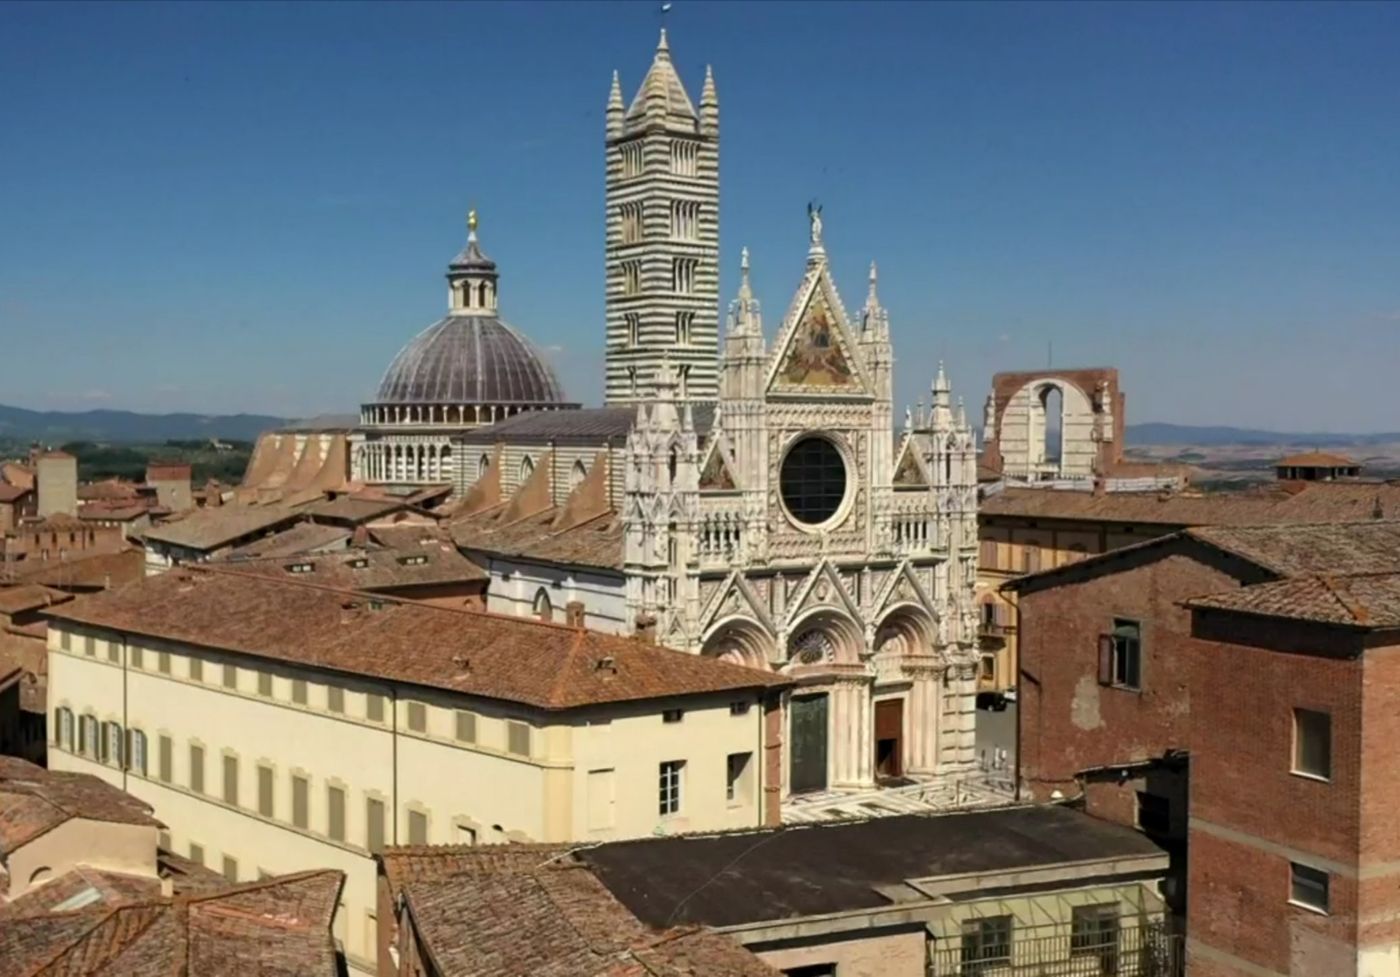 Tauche ein in die mittelalterliche Atmosphäre von Siena